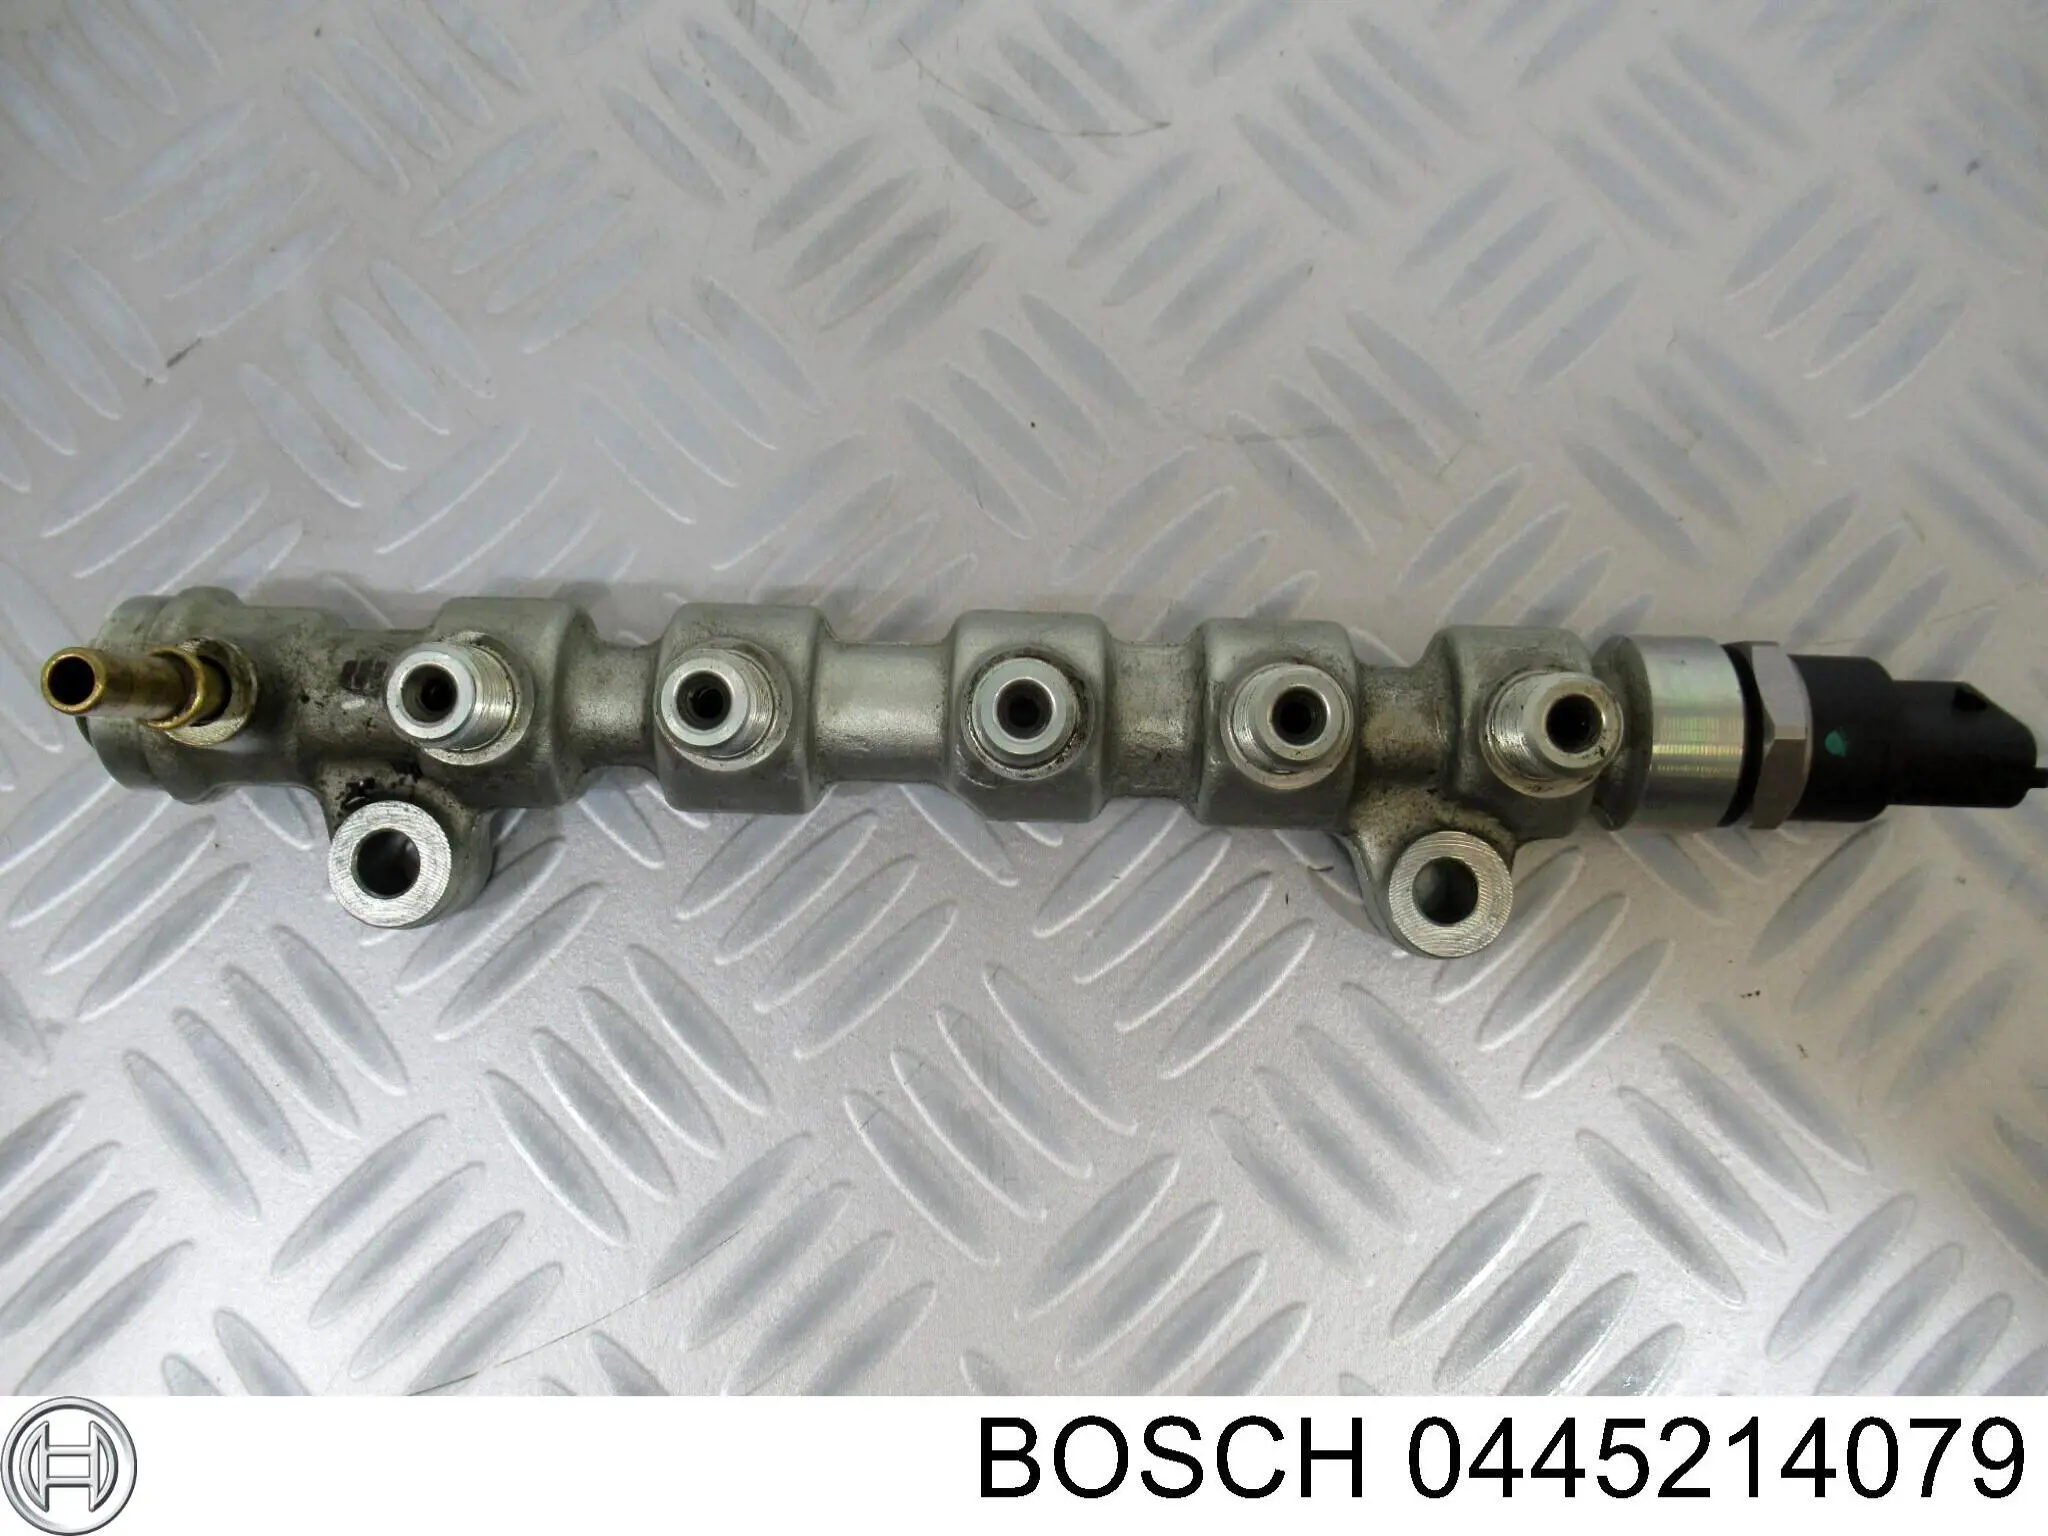 0445214079 Bosch rampa de inyectores